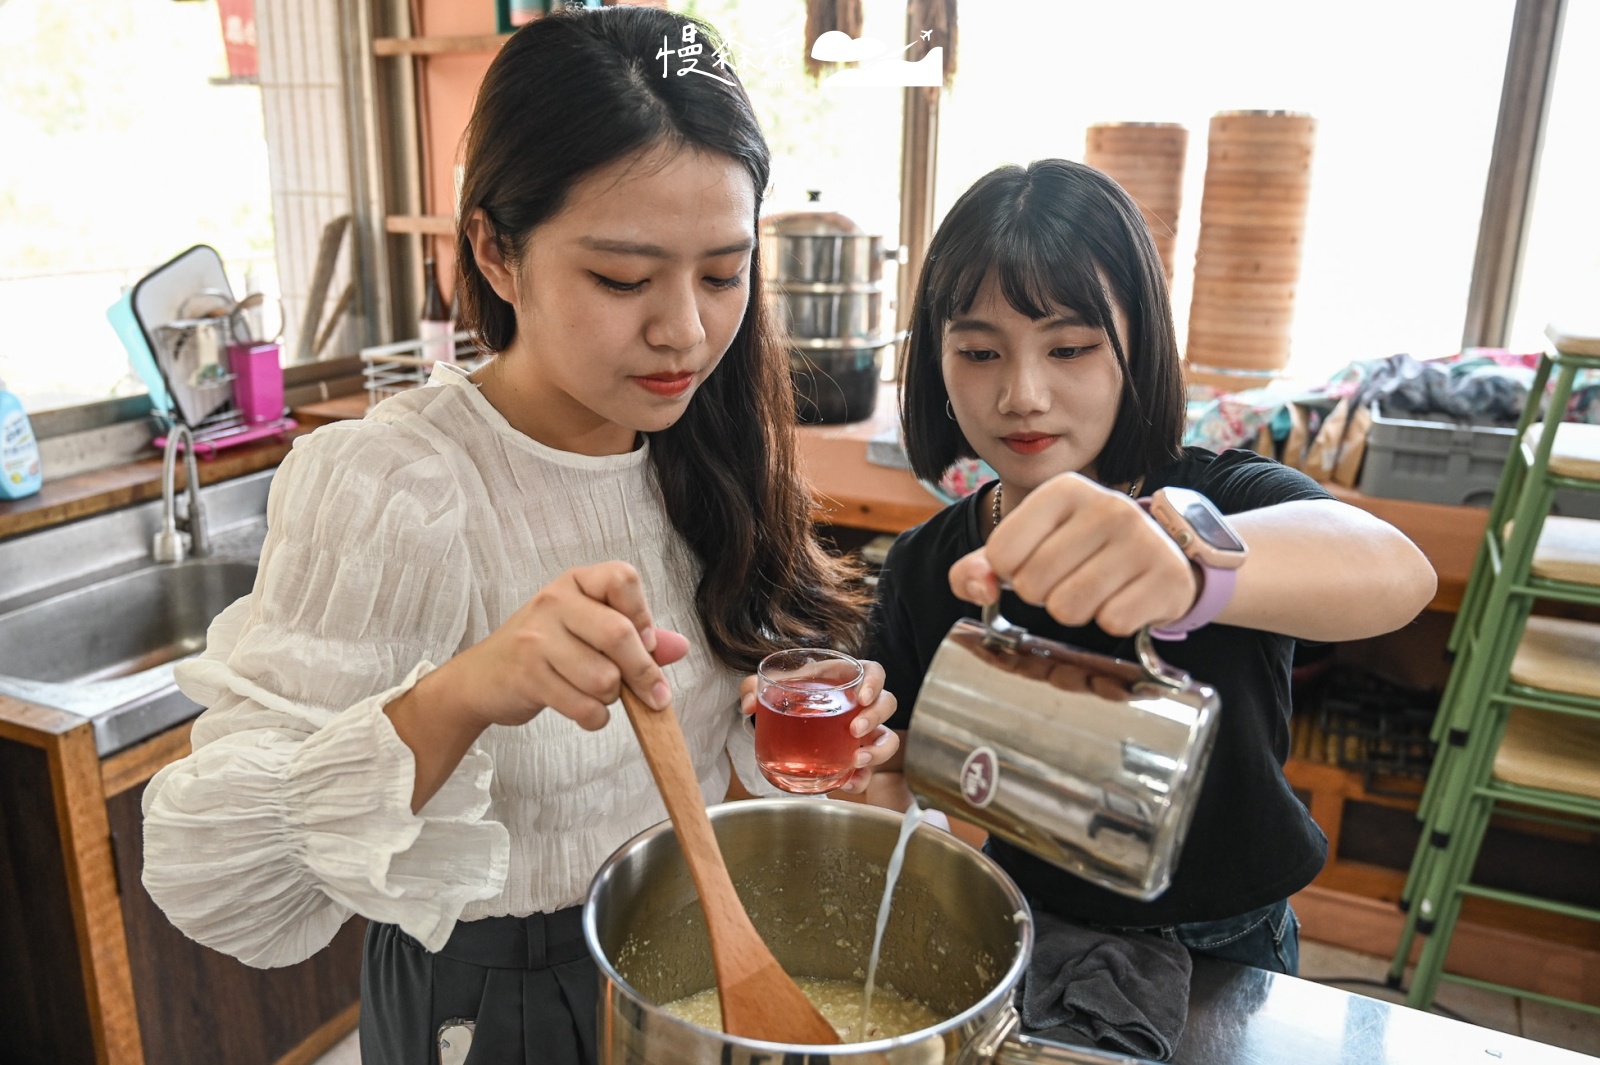 台東縣鹿野鄉 饗嚮台東體驗盒子農夫 製作芭樂果醬